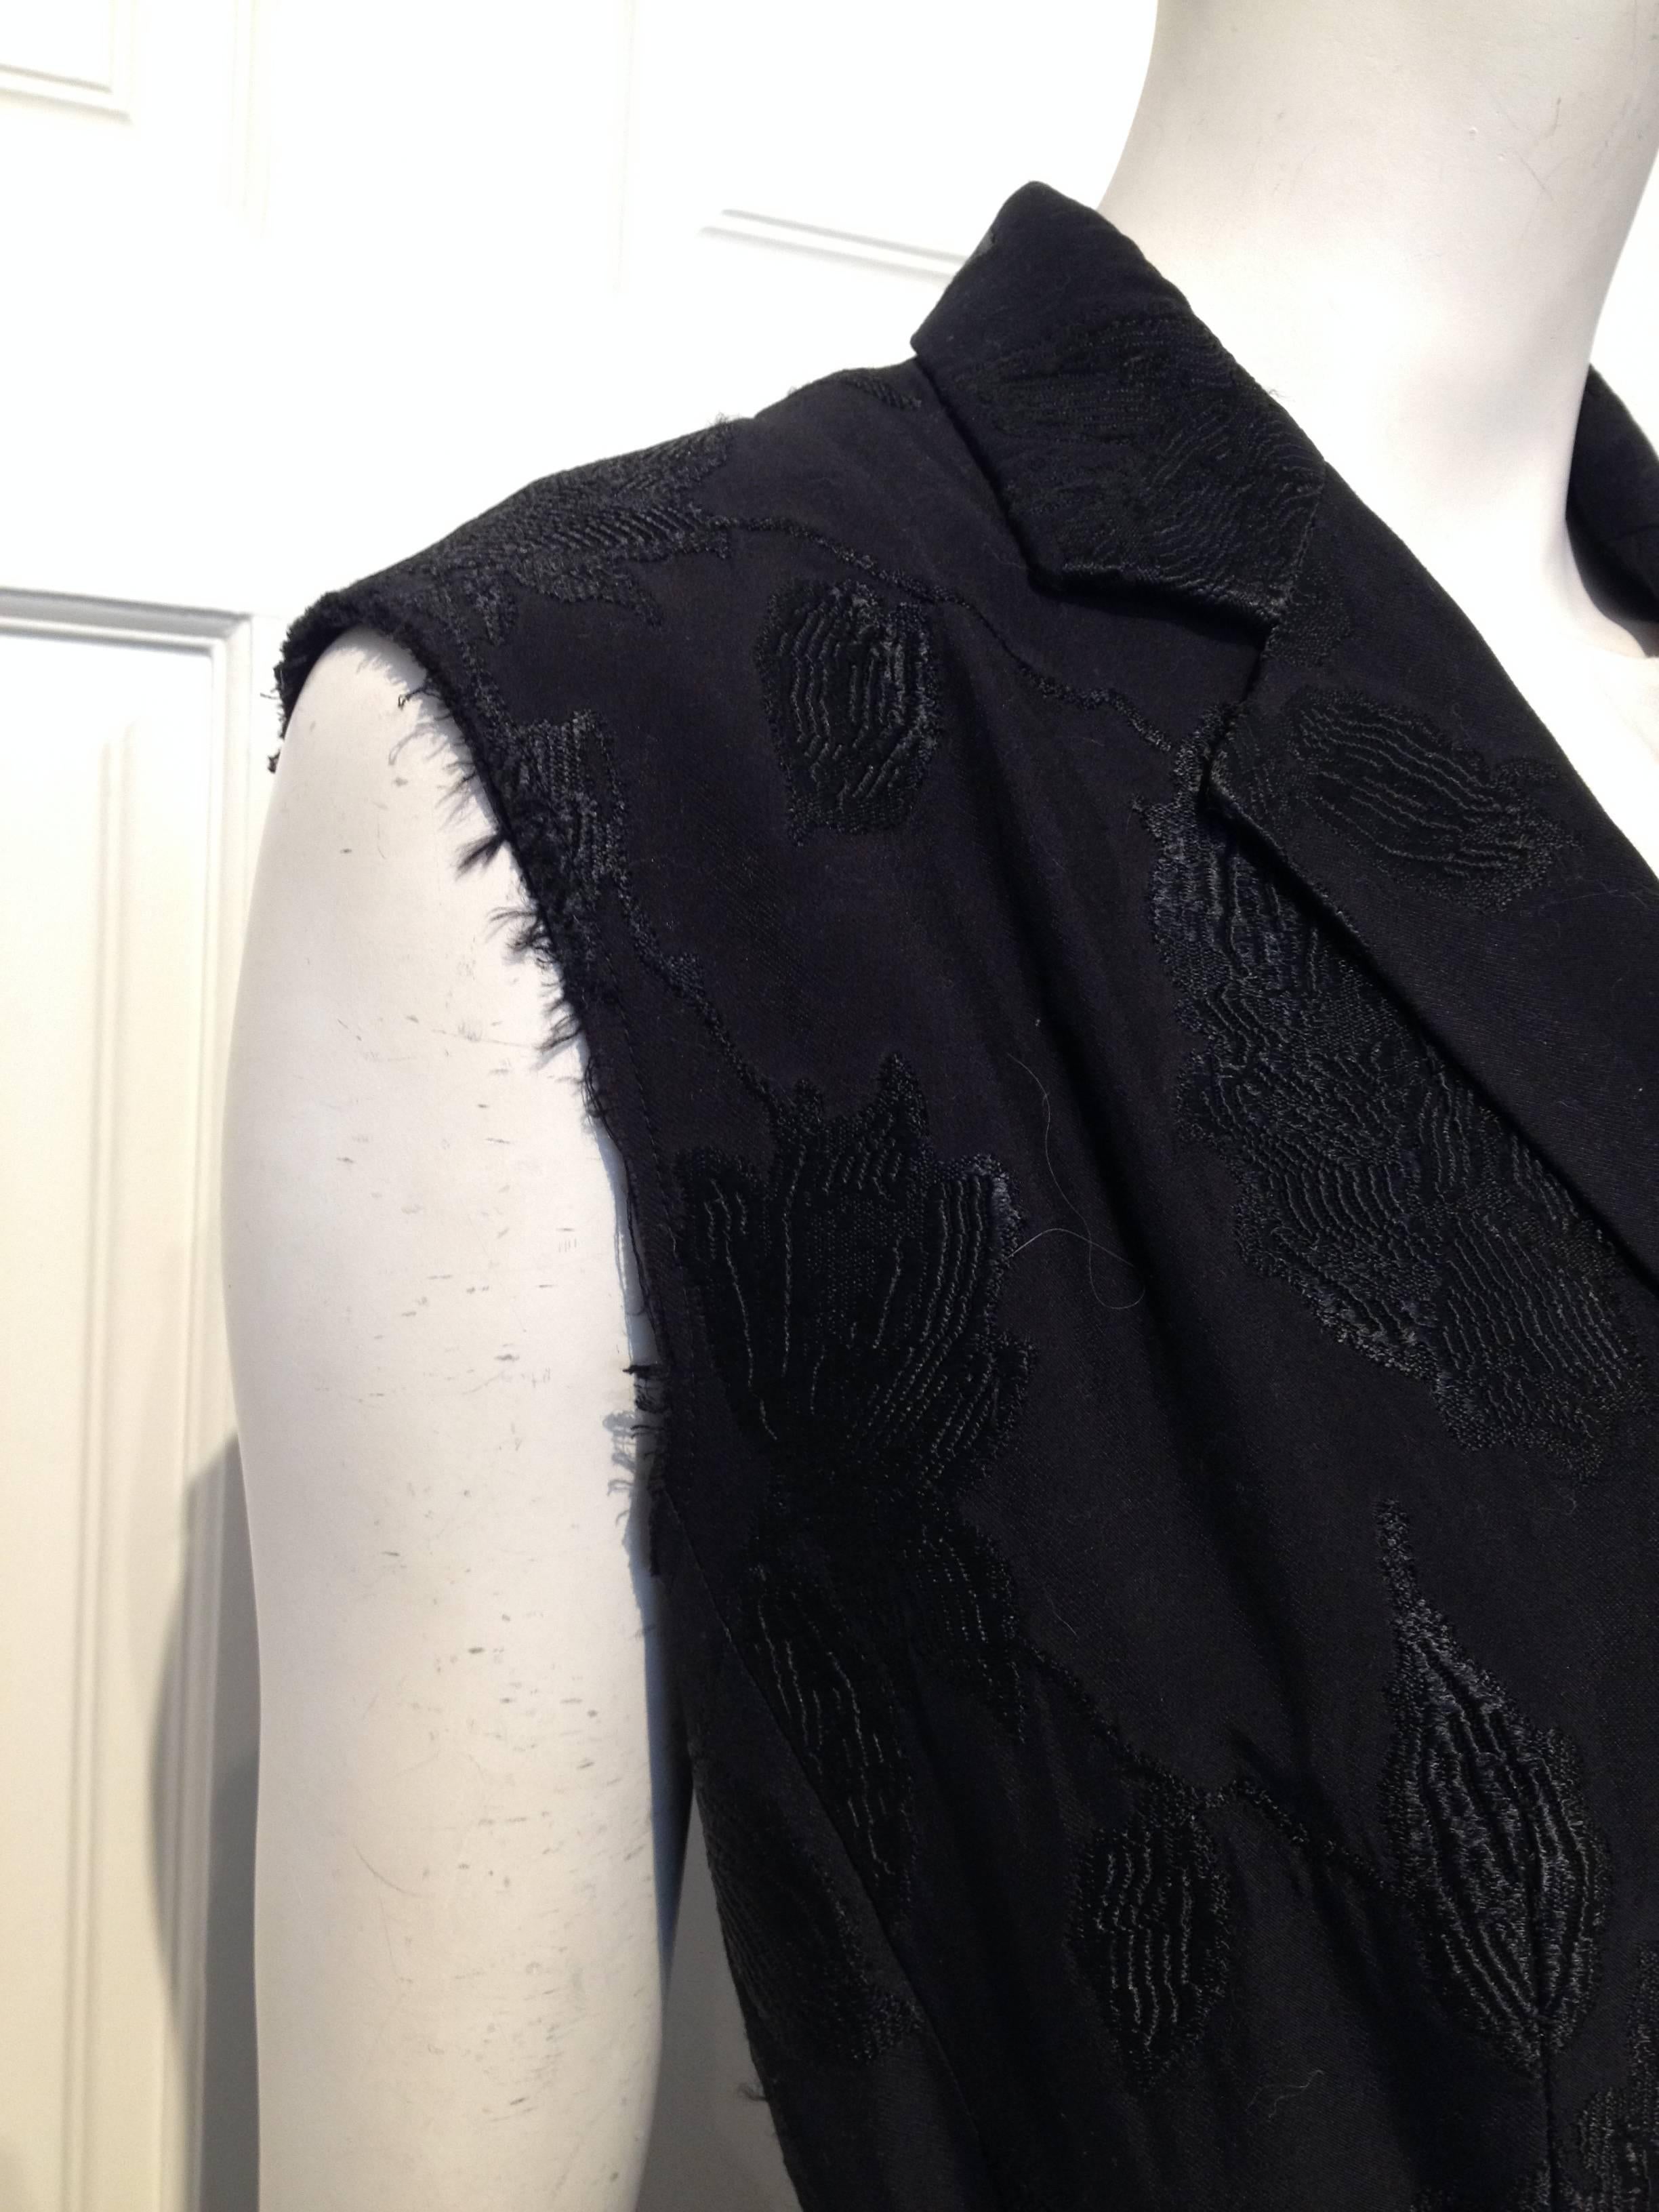 Women's Dries van Noten Black Brocade Vest Size 40 (10)